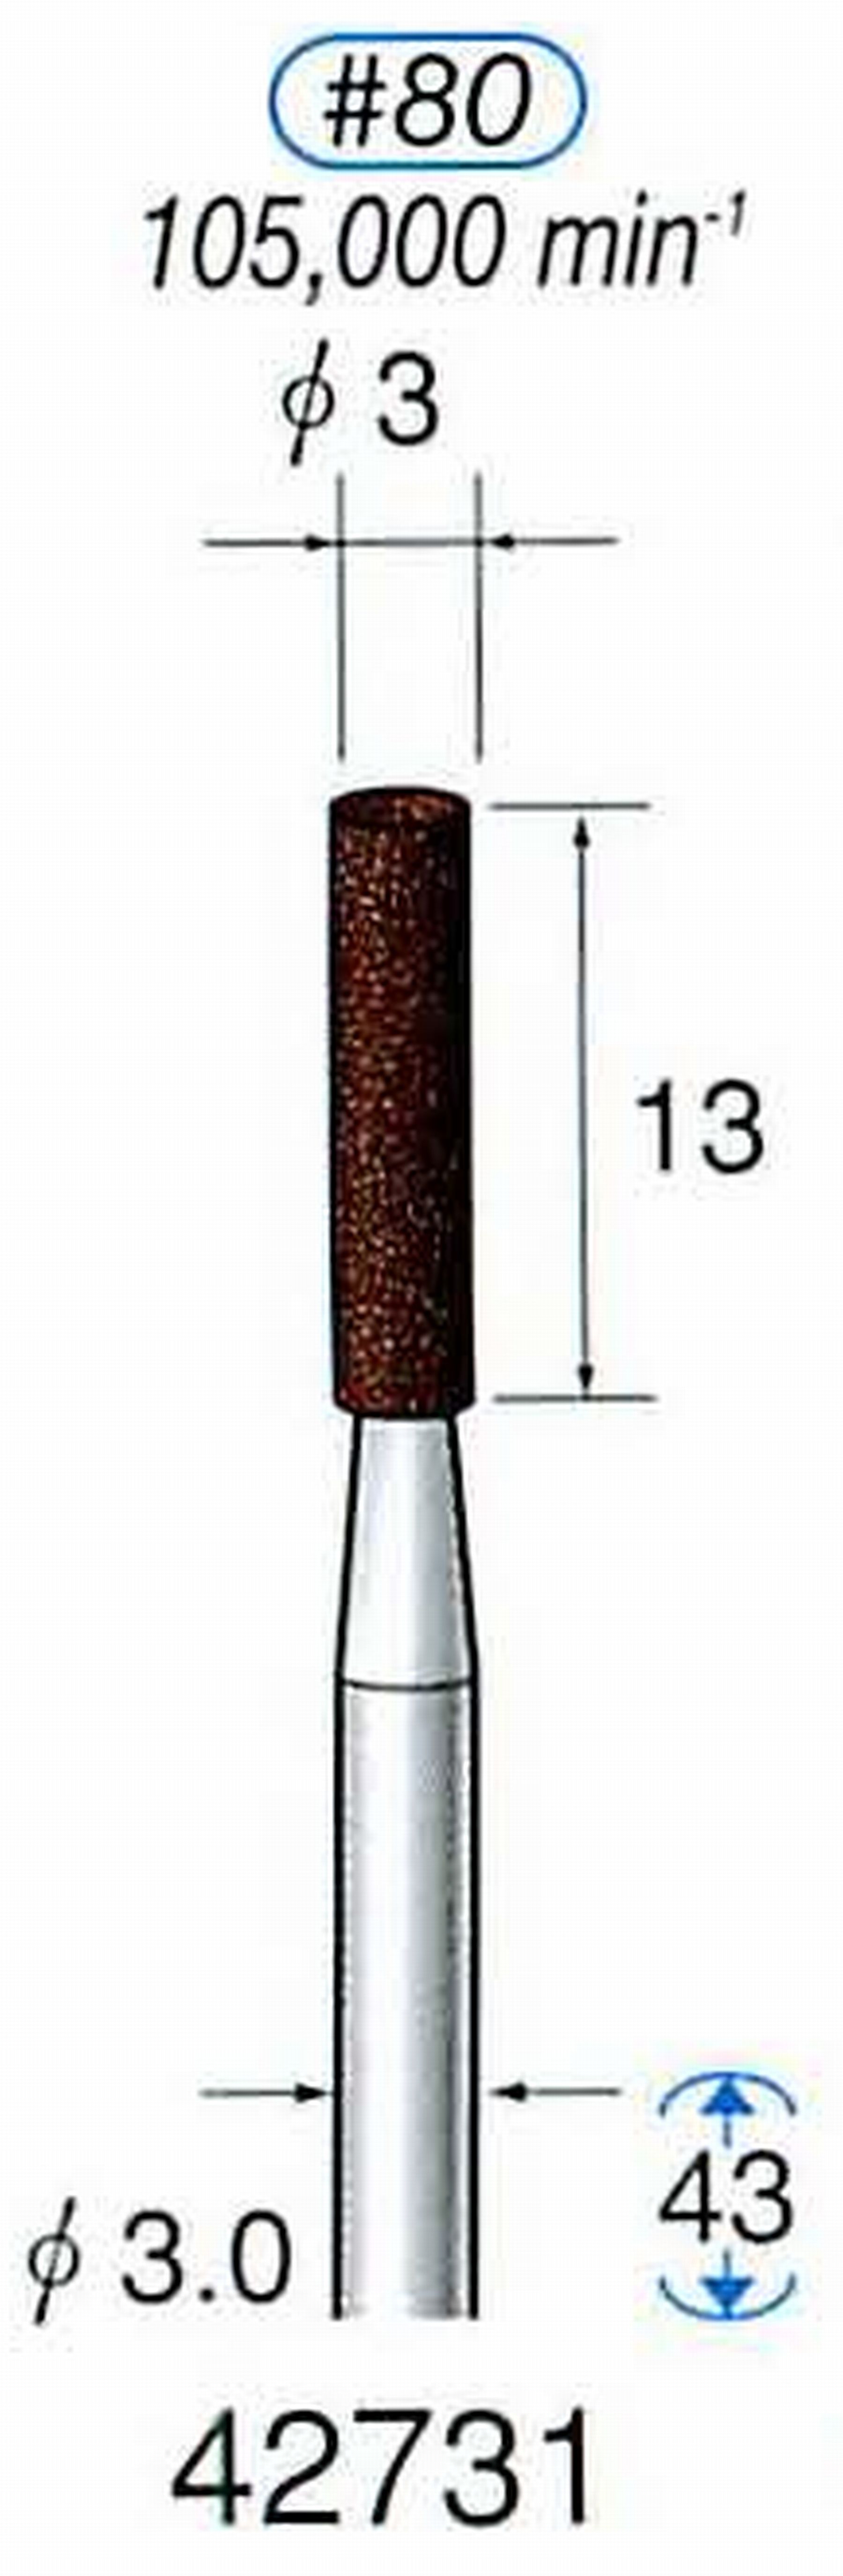 ナカニシ/NAKANISHI 軸付砥石(A・WA砥粒) ブラウン砥石 軸径(シャンク) φ3.0mm 42731